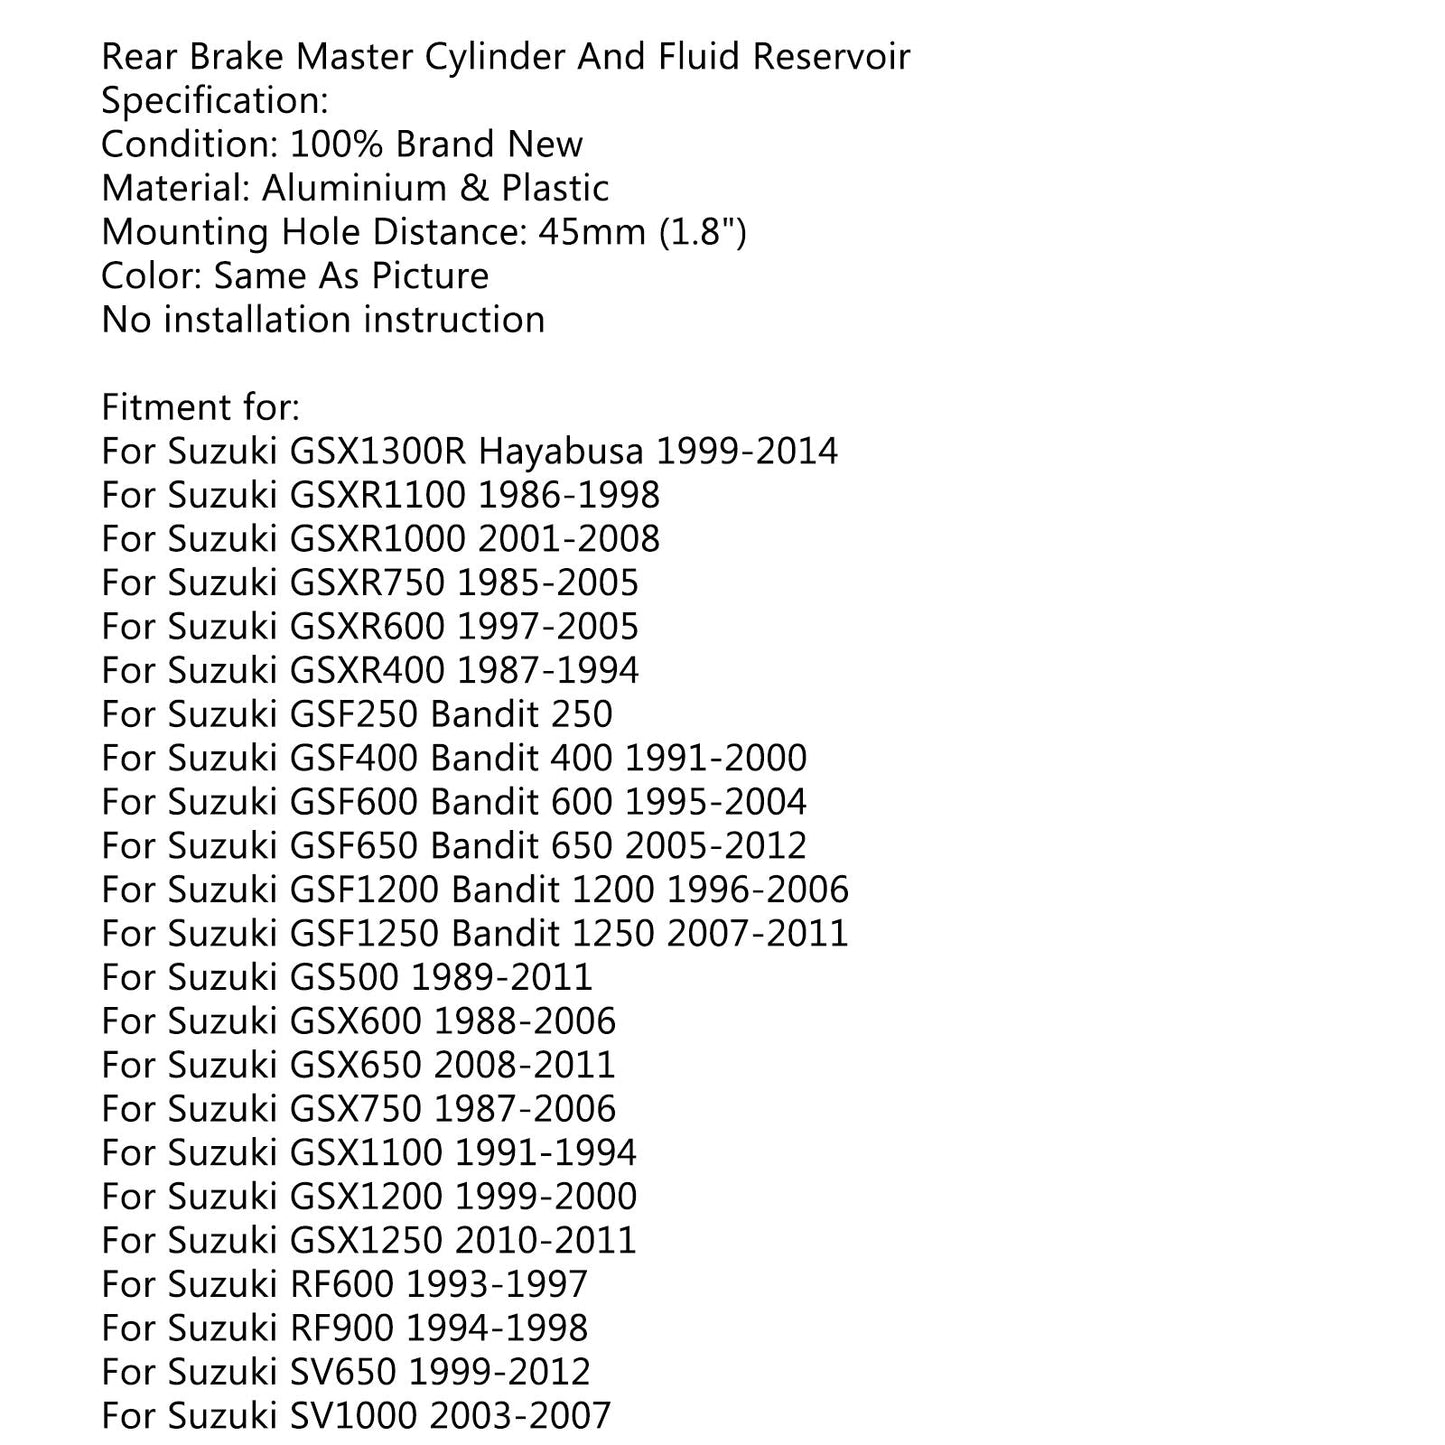 Rear Brake Master Cylinder Fluid Reservoir For Suzuki GSXR600/750 2001-2010